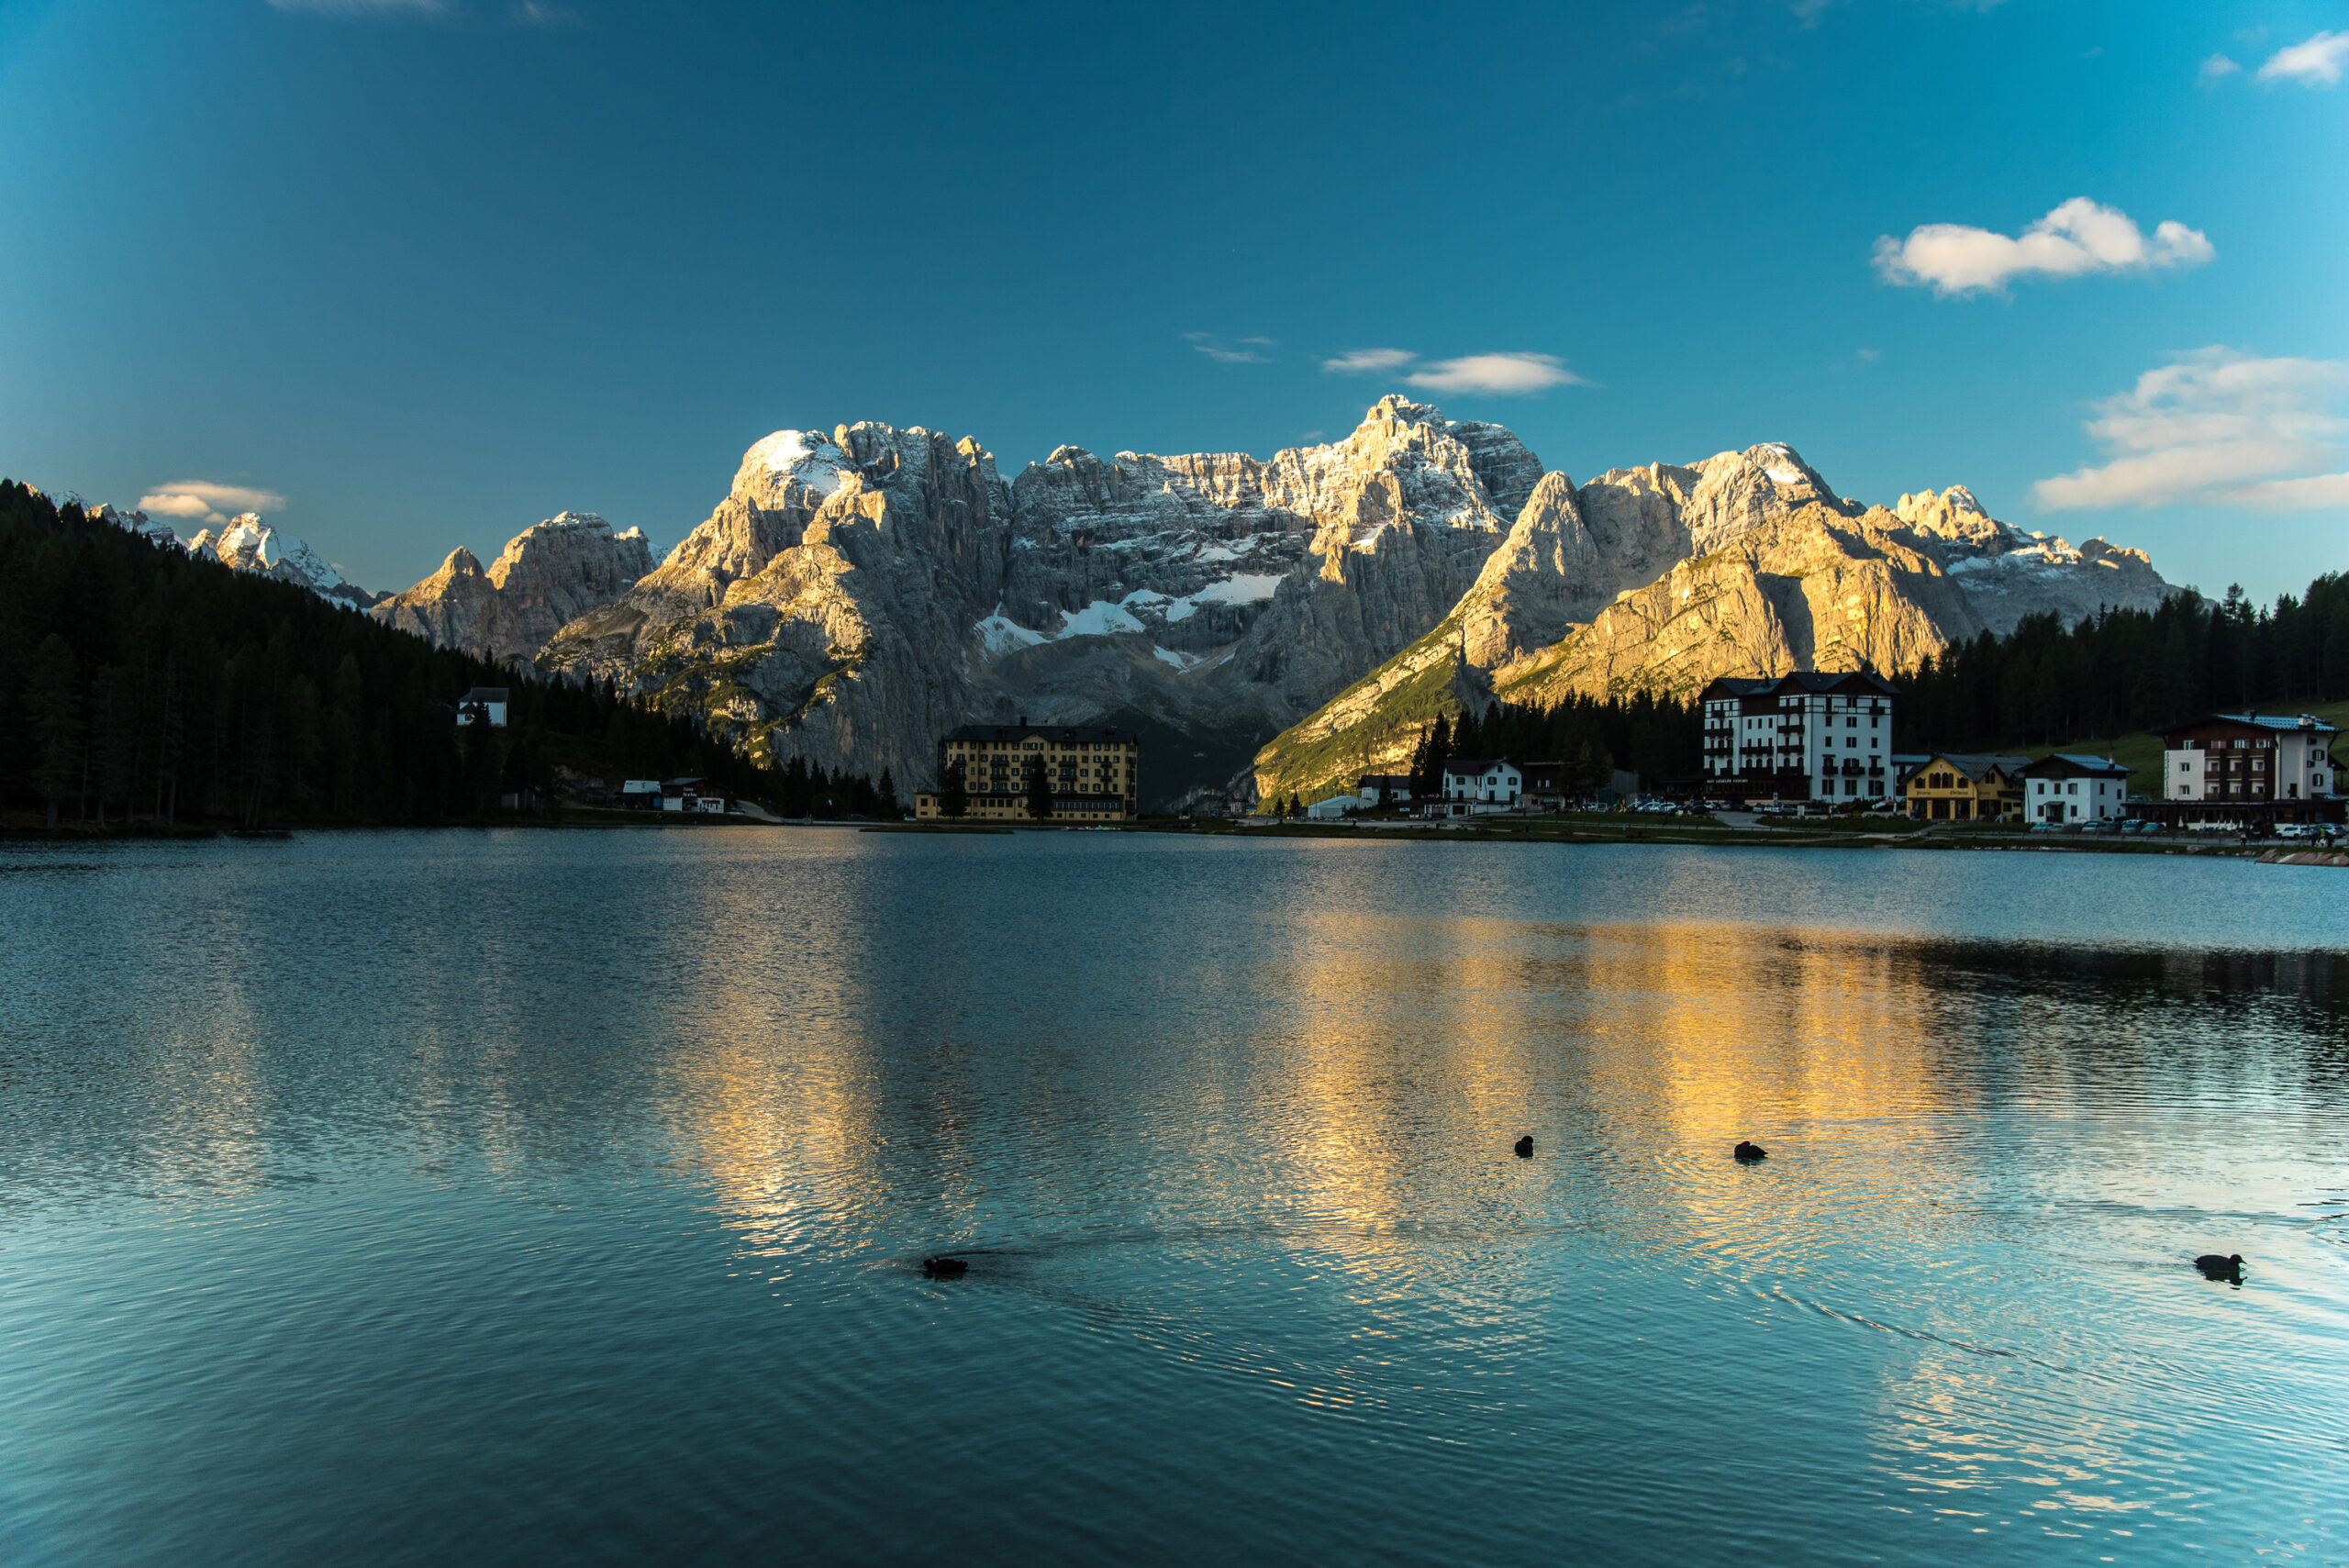 Il lago di Misurina nelle Dolomiti (Belluno) - Credit Latitud3s / Regione del Veneto                                    
                                                                        
                                    